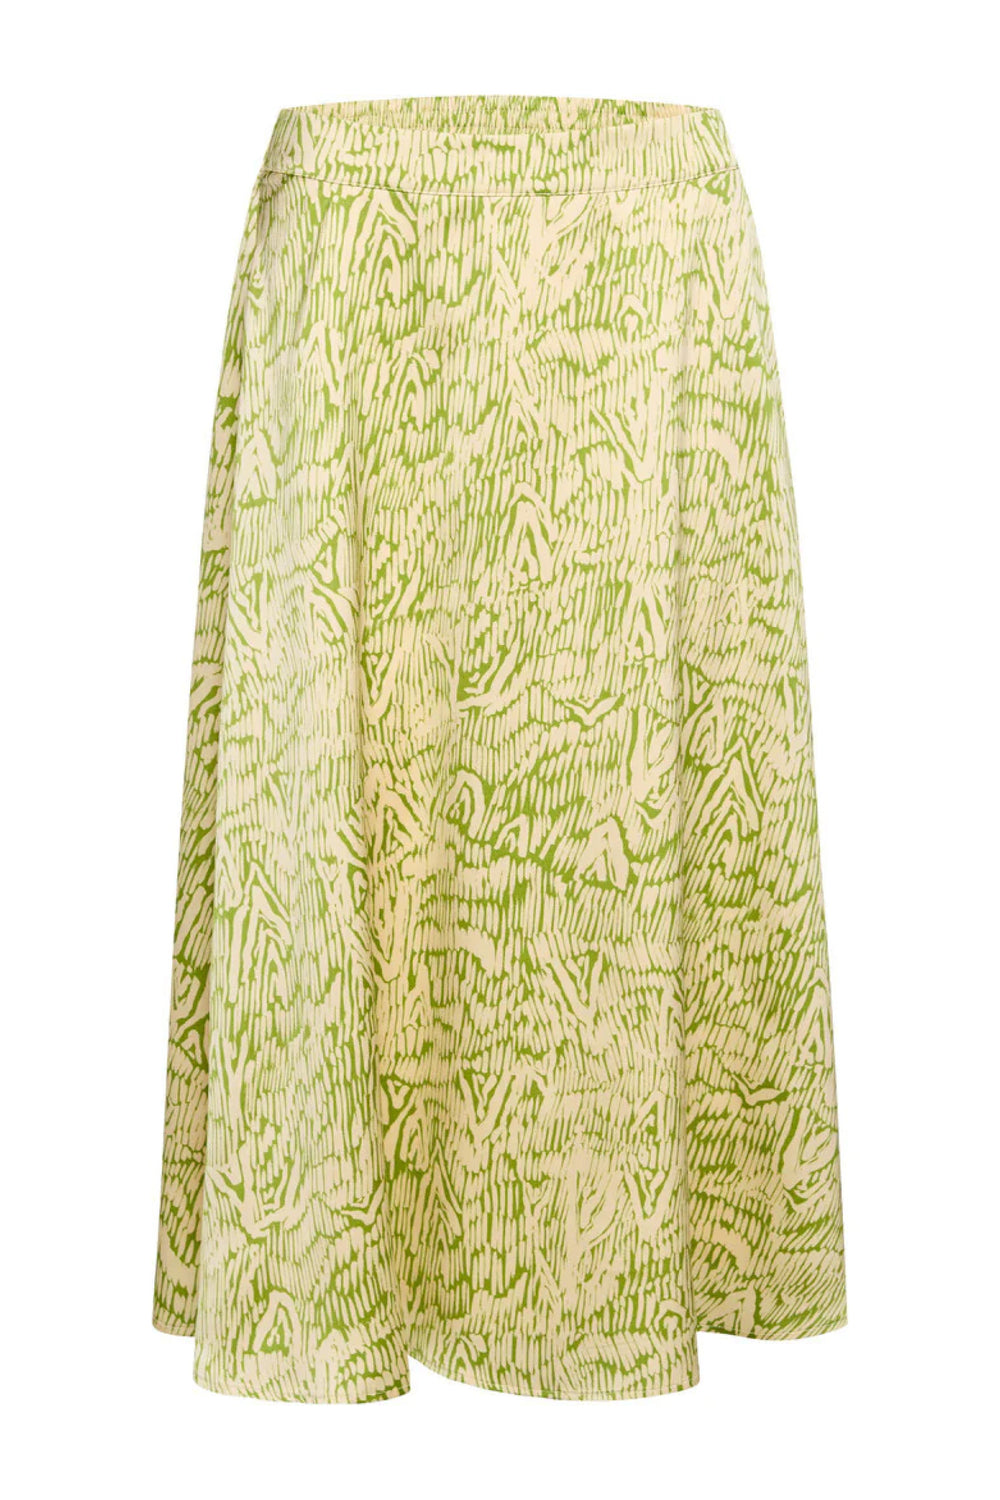 Bruuns Bazaar Women AcaciaBBAmattas skirt Skirt Moss Green print